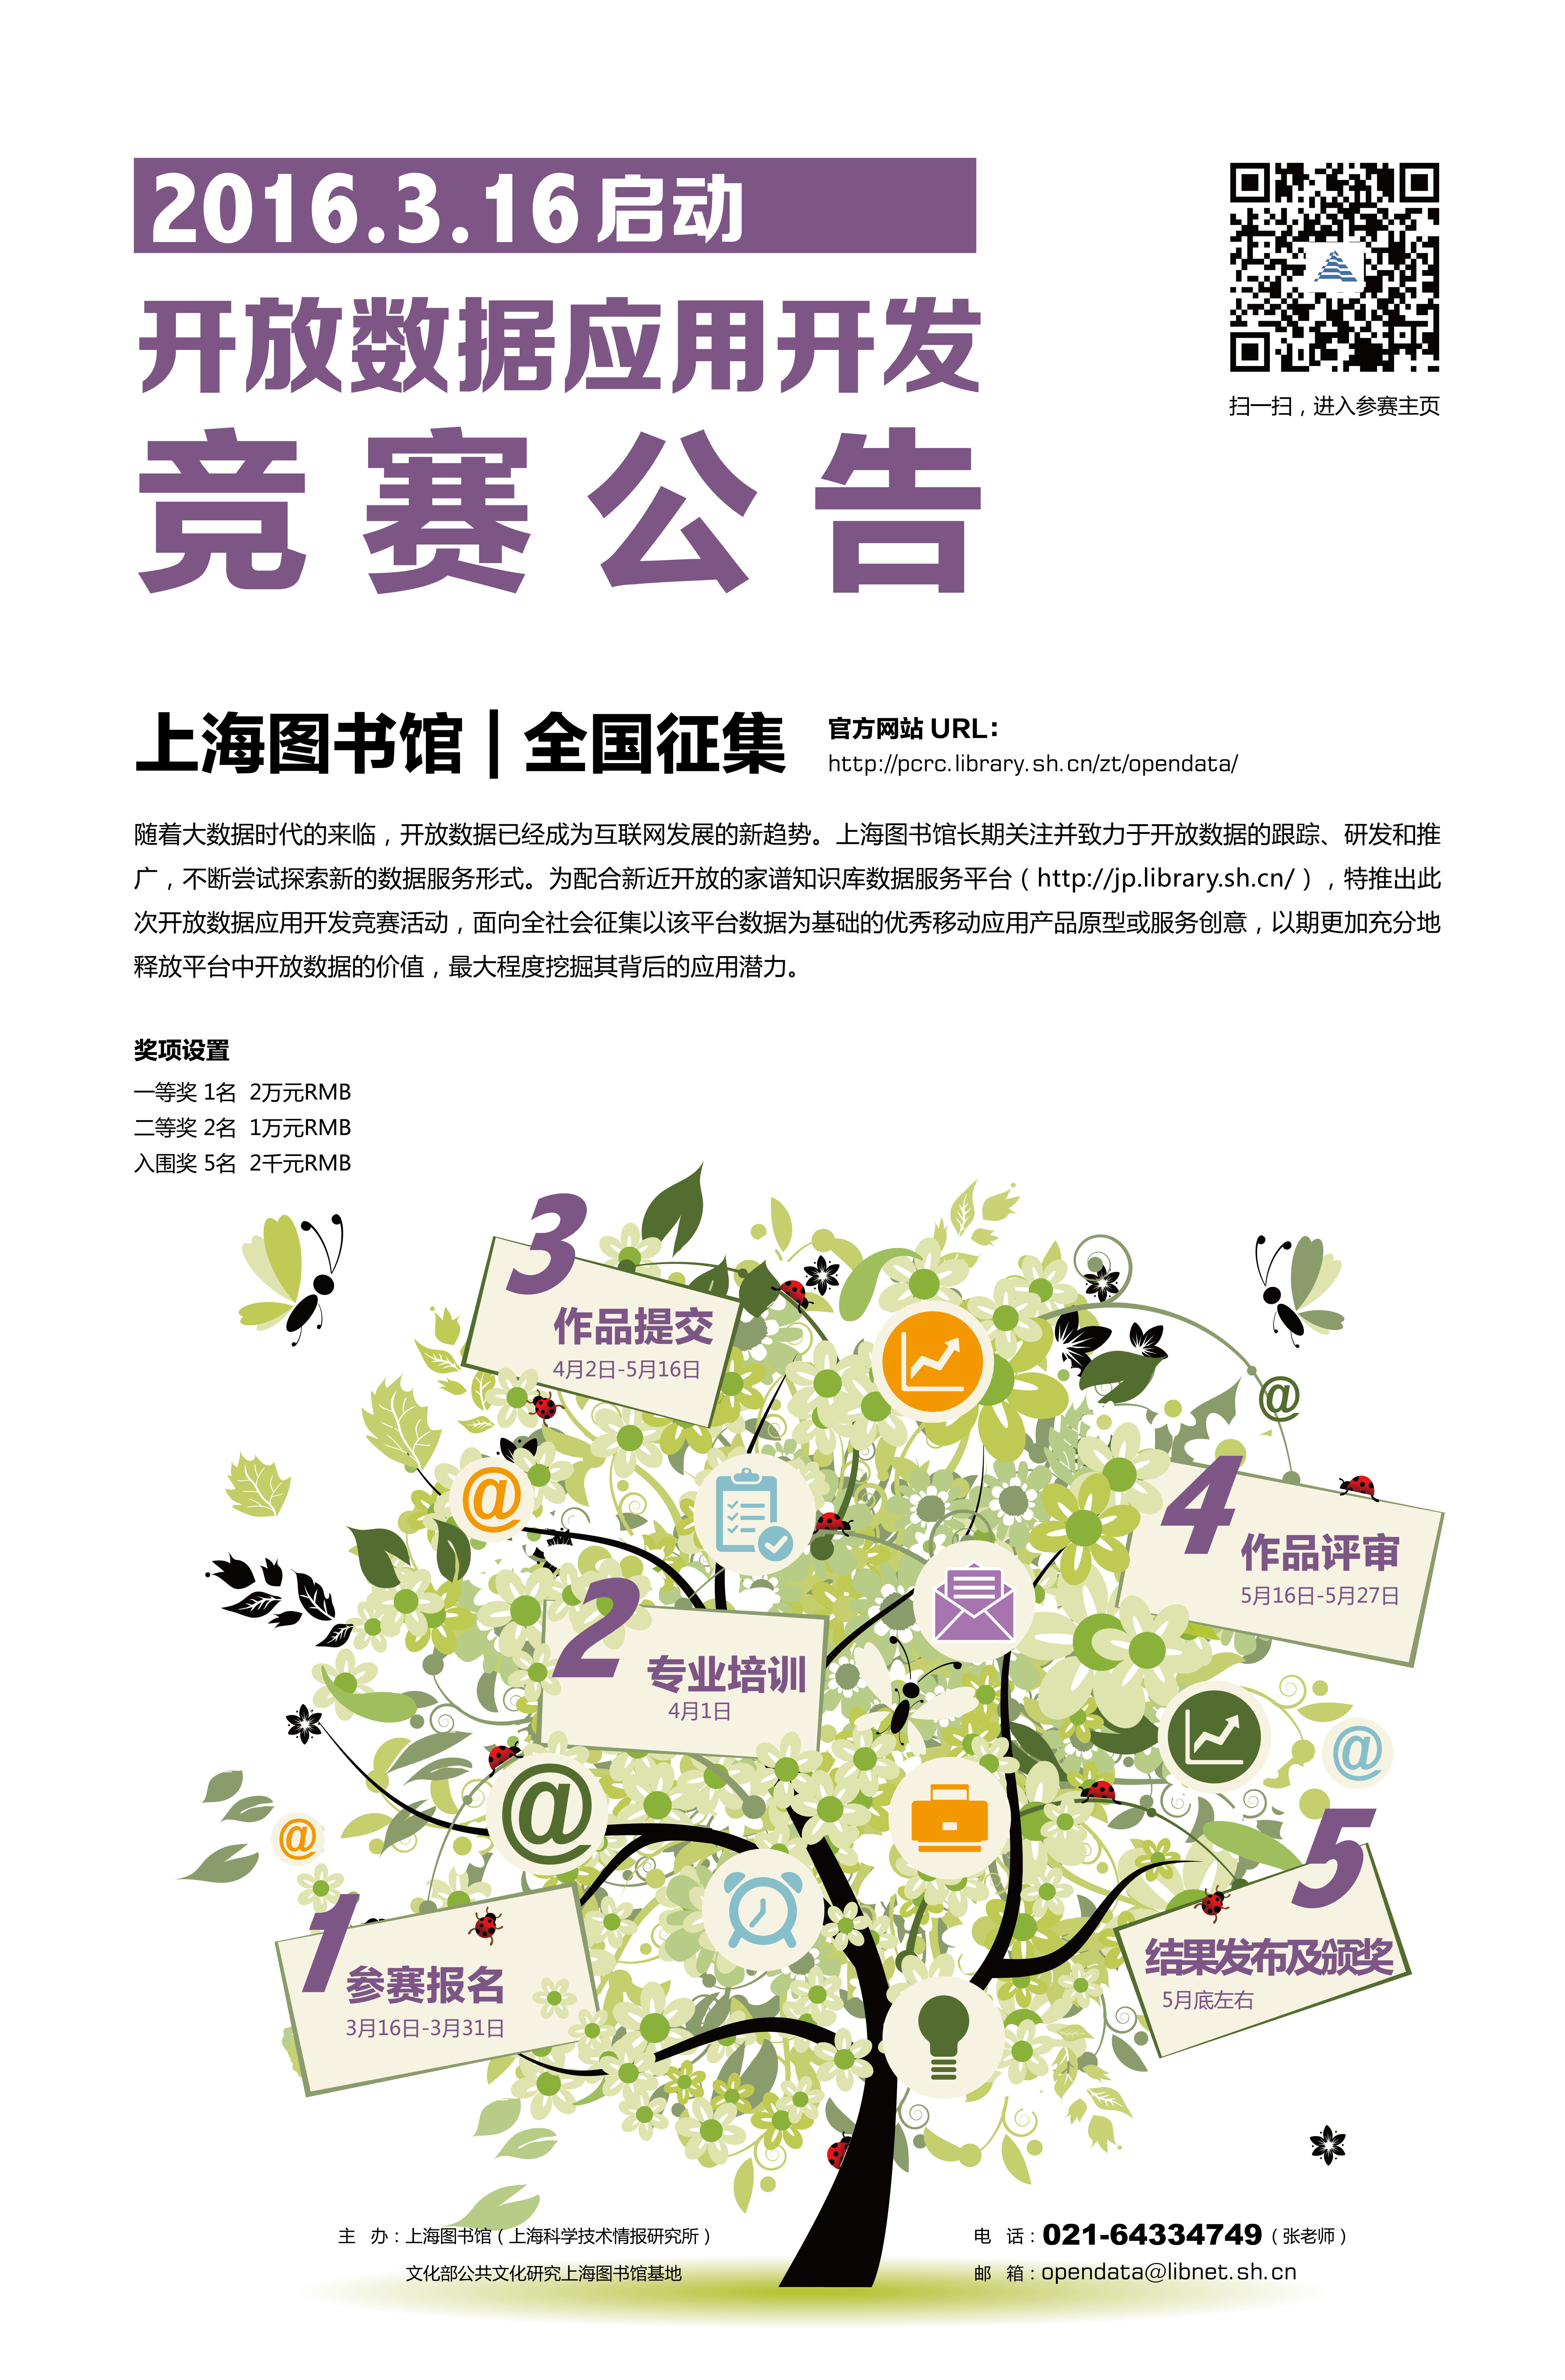 2016上海图书馆开放数据应用开发竞赛